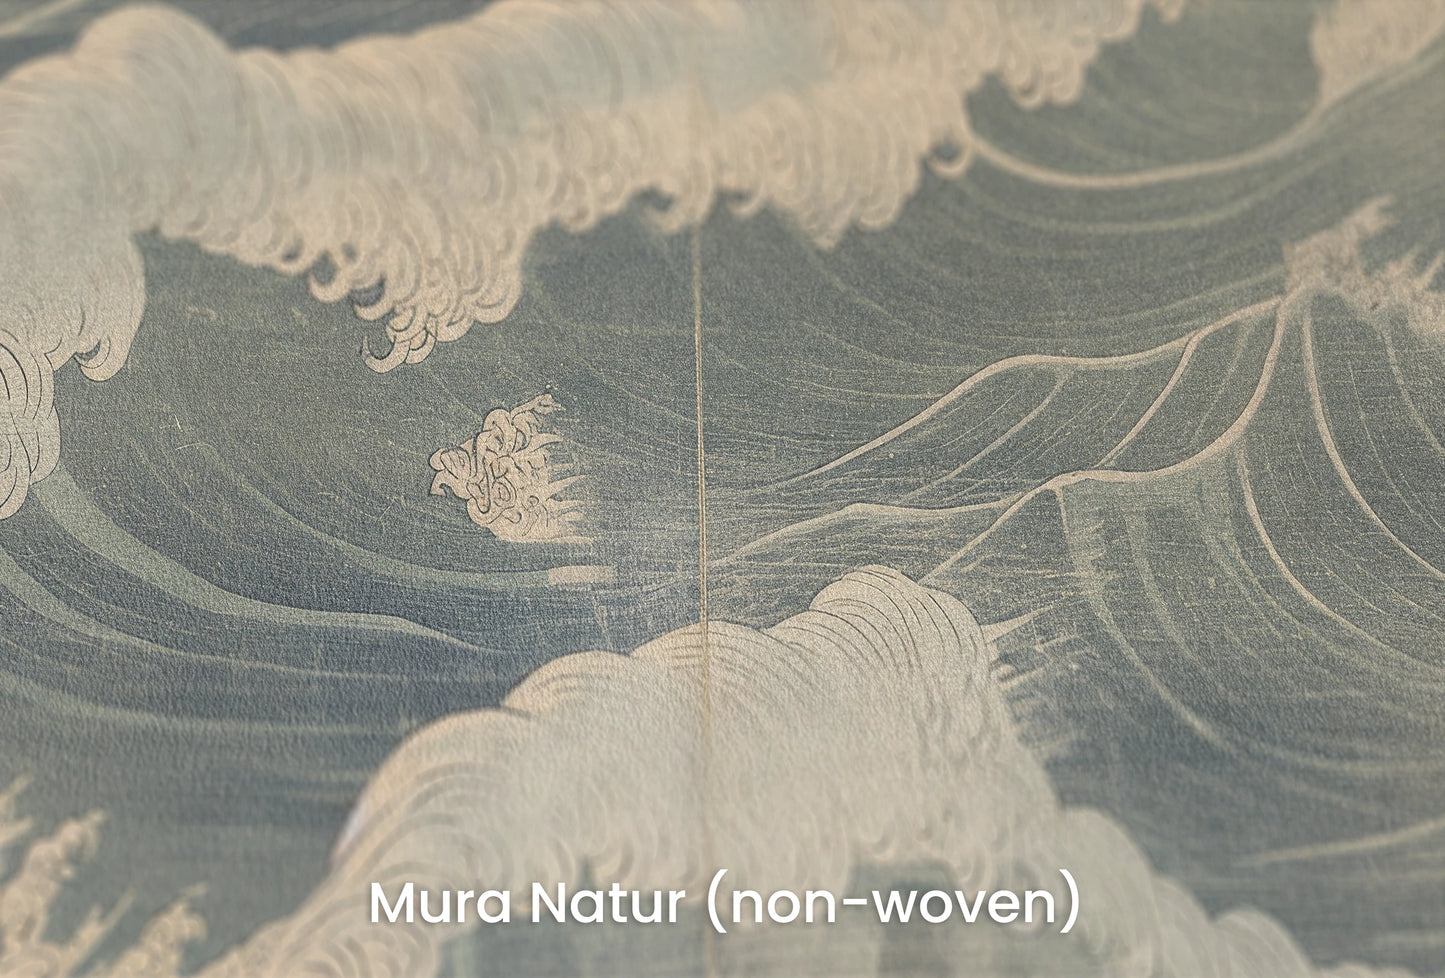 Zbliżenie na artystyczną fototapetę o nazwie Nocturnal Waves na podłożu Mura Natur (non-woven) - naturalne i ekologiczne podłoże.